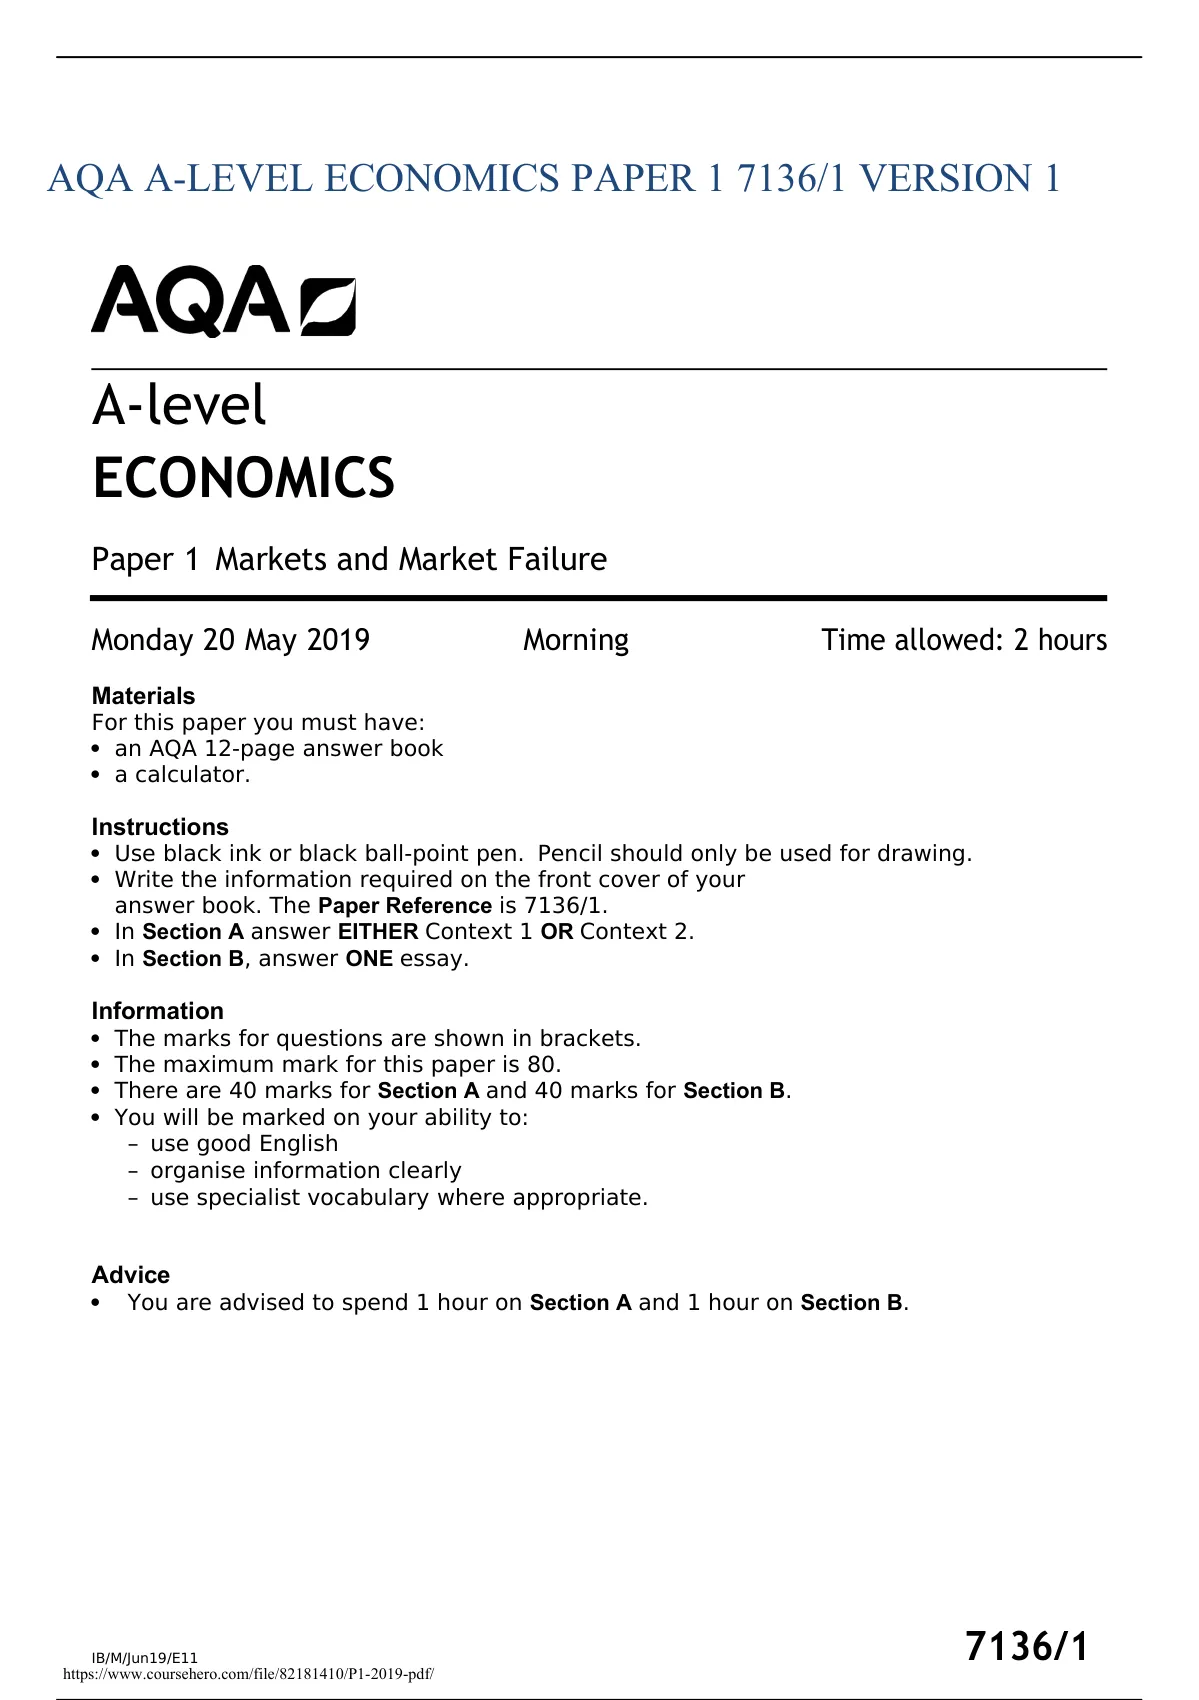 aqa a level economics essay plans